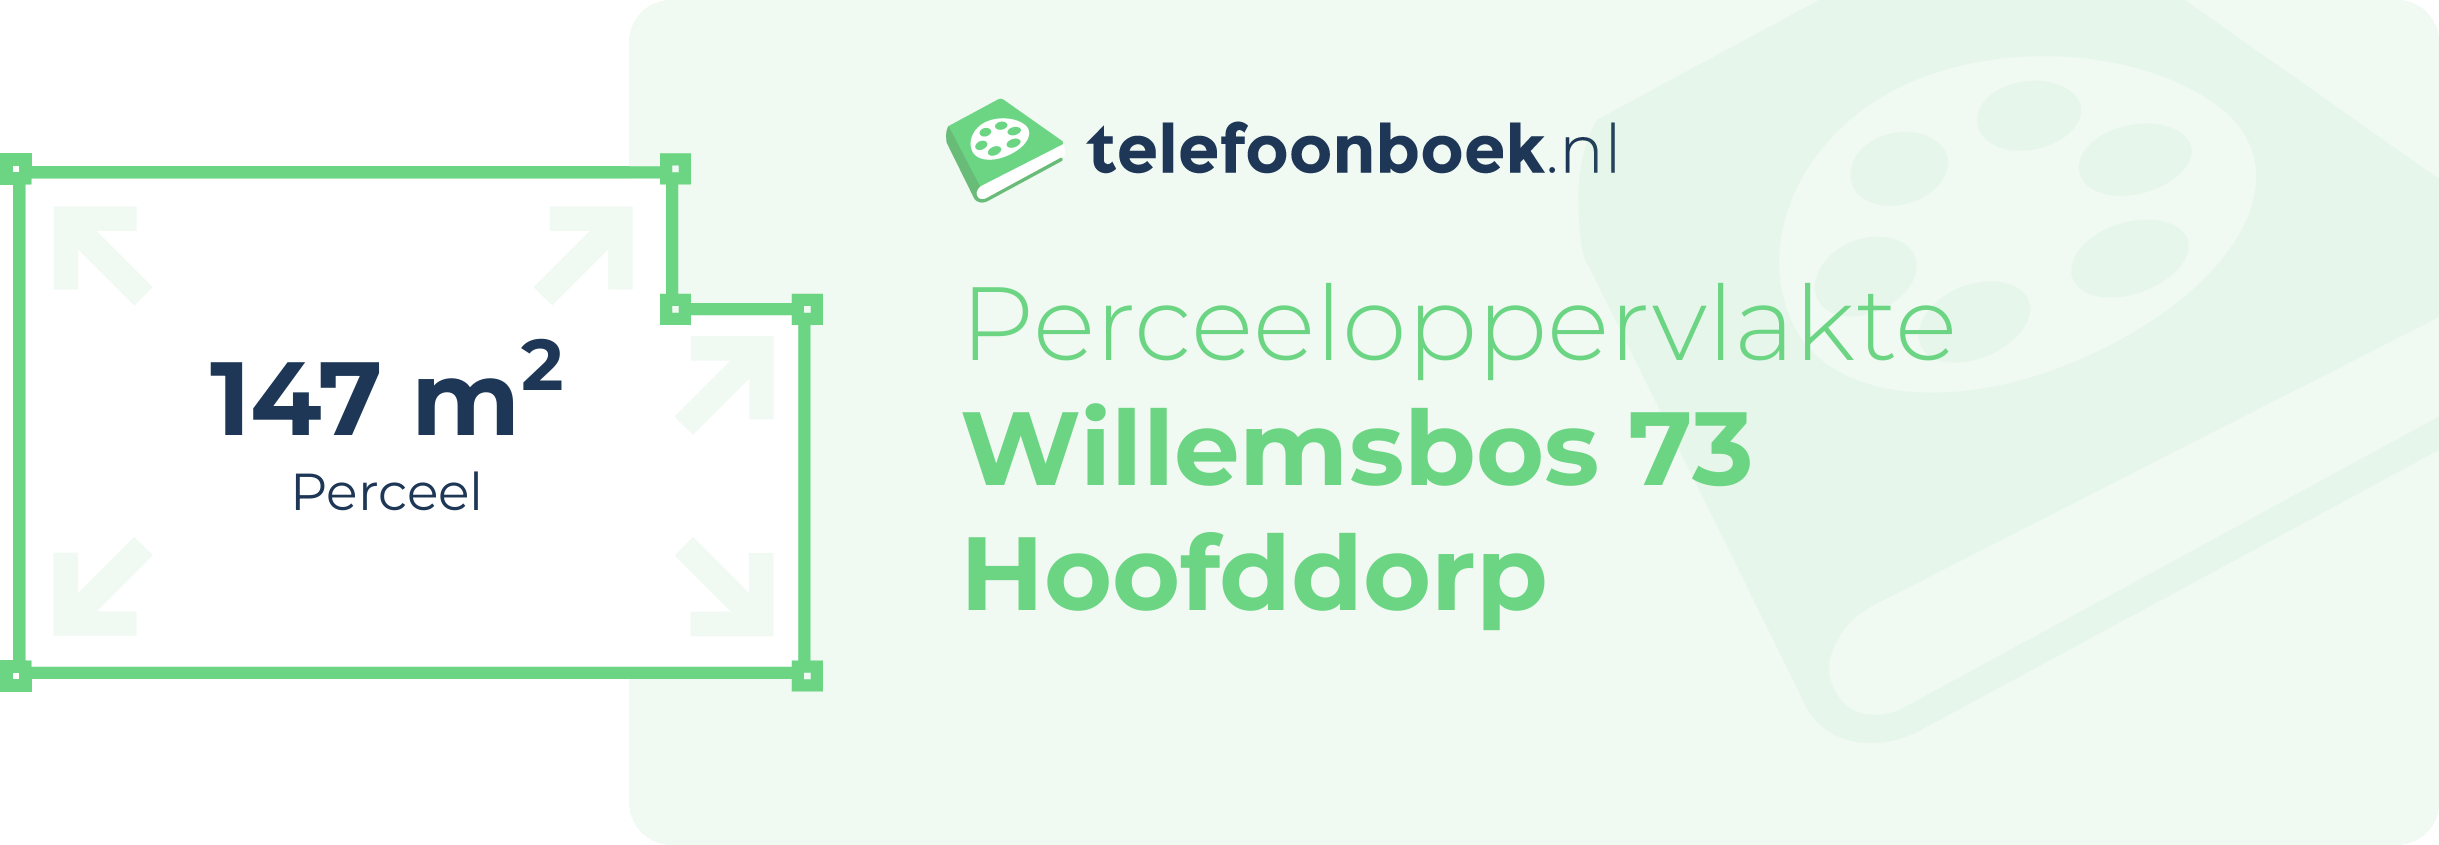 Perceeloppervlakte Willemsbos 73 Hoofddorp